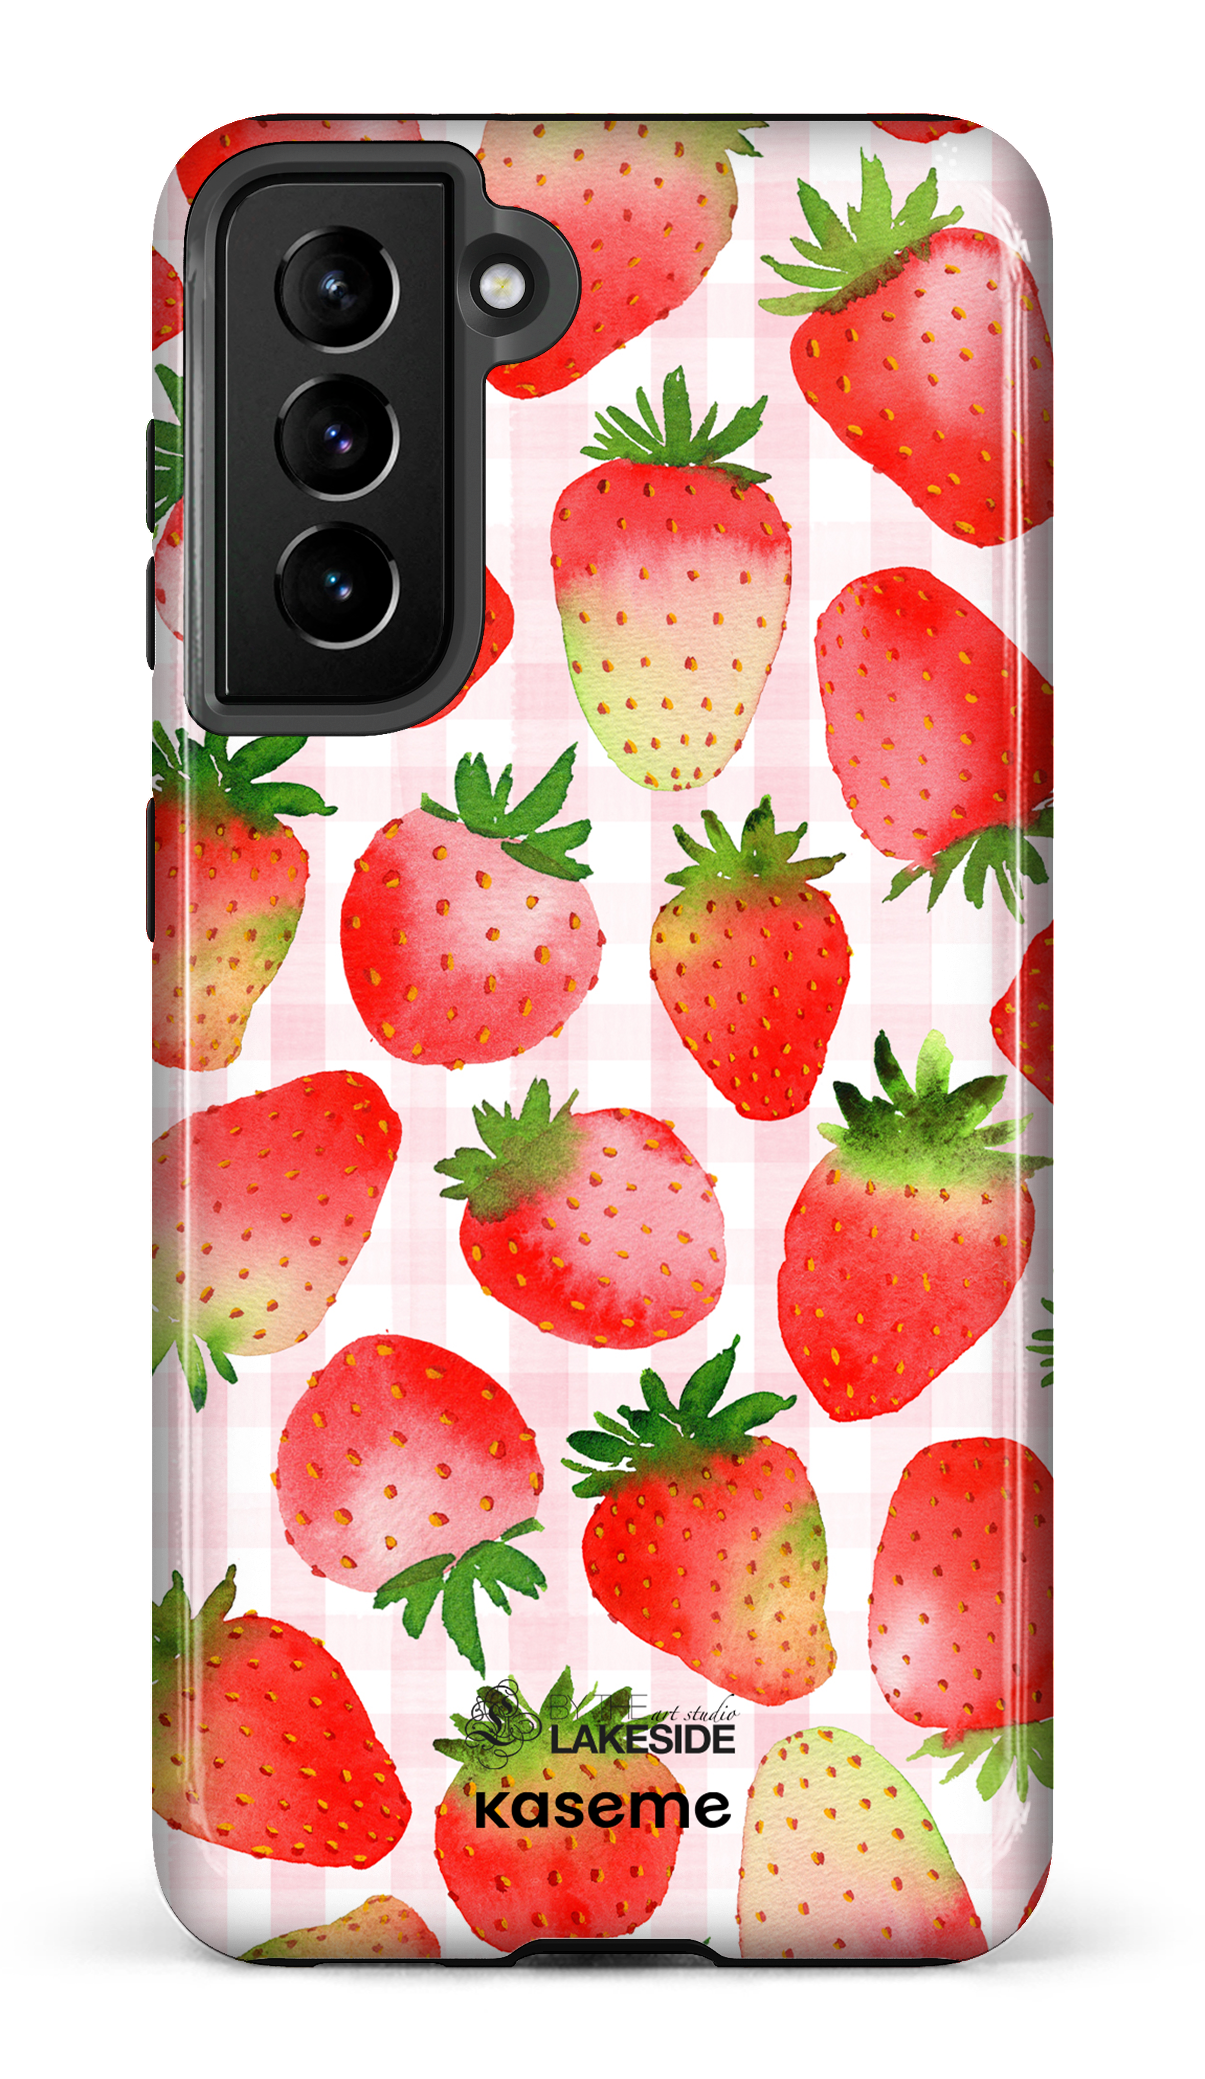 Strawberry Fields by Pooja Umrani - Galaxy S21